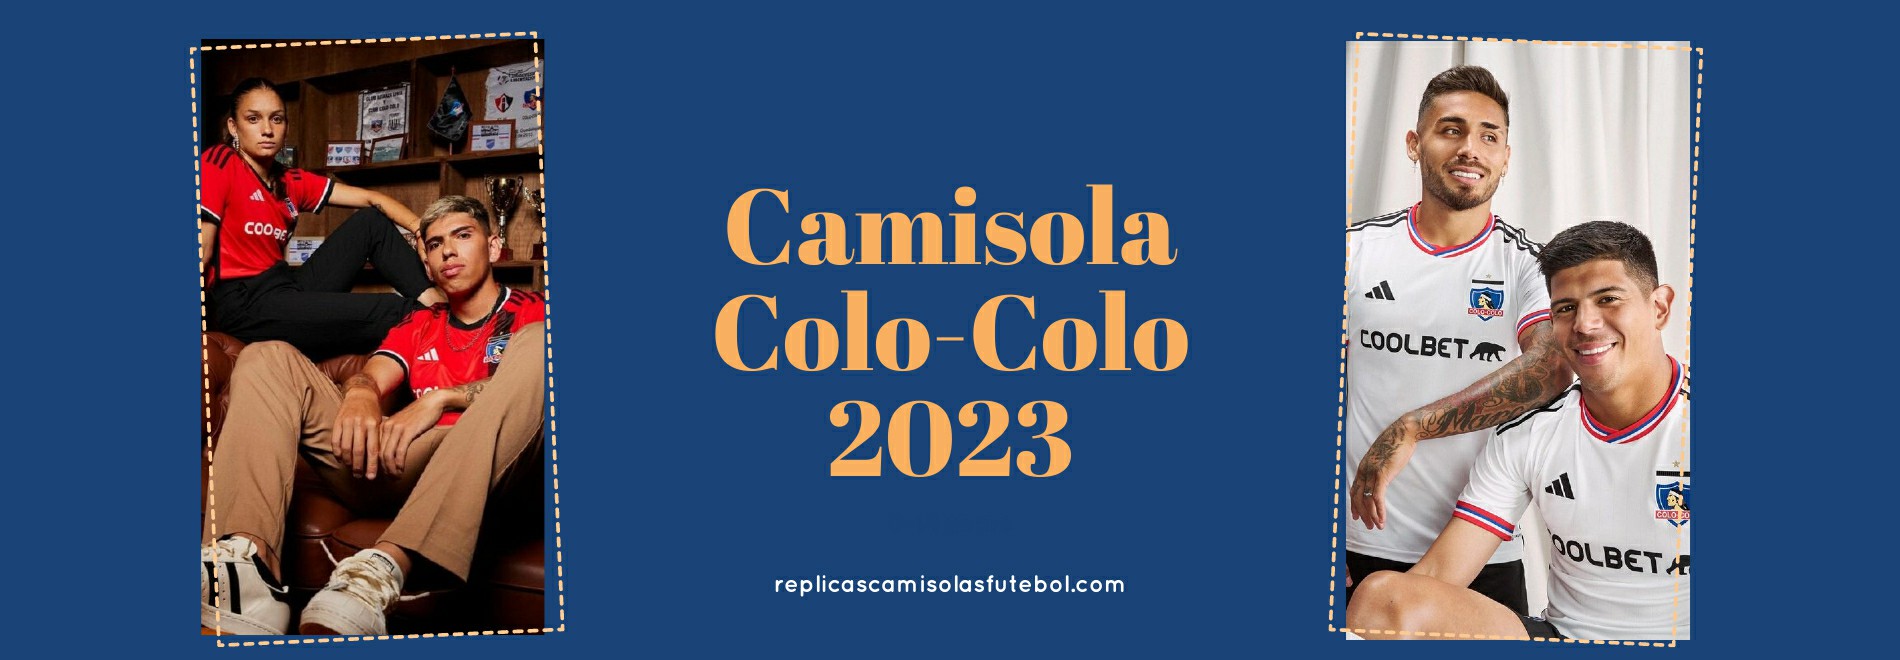 Camisola Colo-Colo 2023-2024